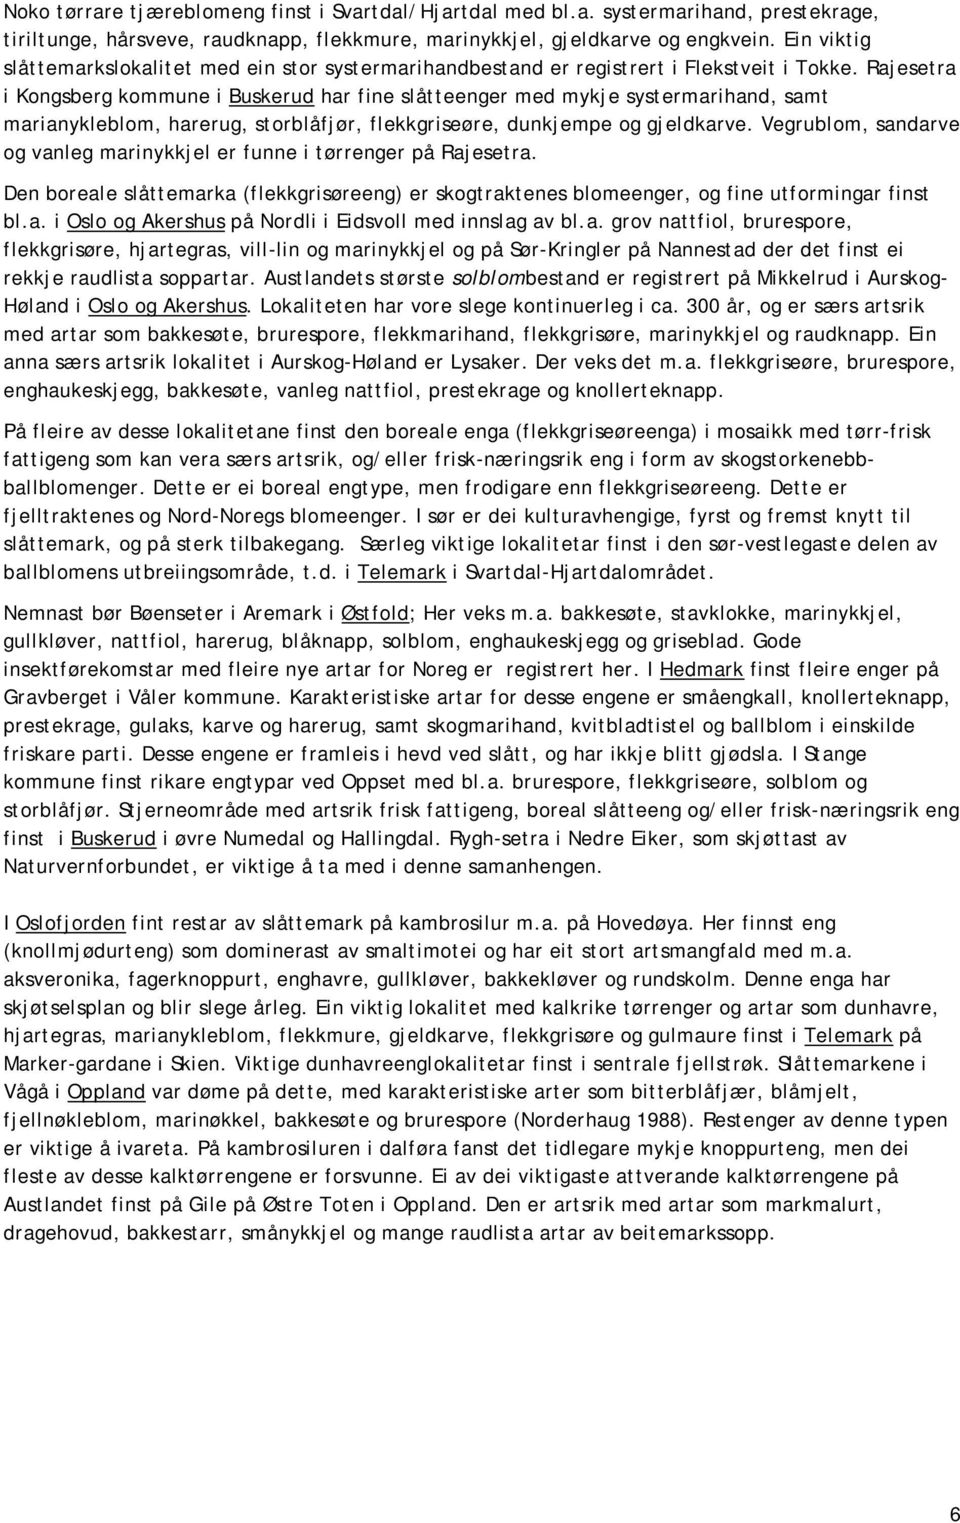 Rajesetra i Kongsberg kommune i Buskerud har fine slåtteenger med mykje systermarihand, samt marianykleblom, harerug, storblåfjør, flekkgriseøre, dunkjempe og gjeldkarve.